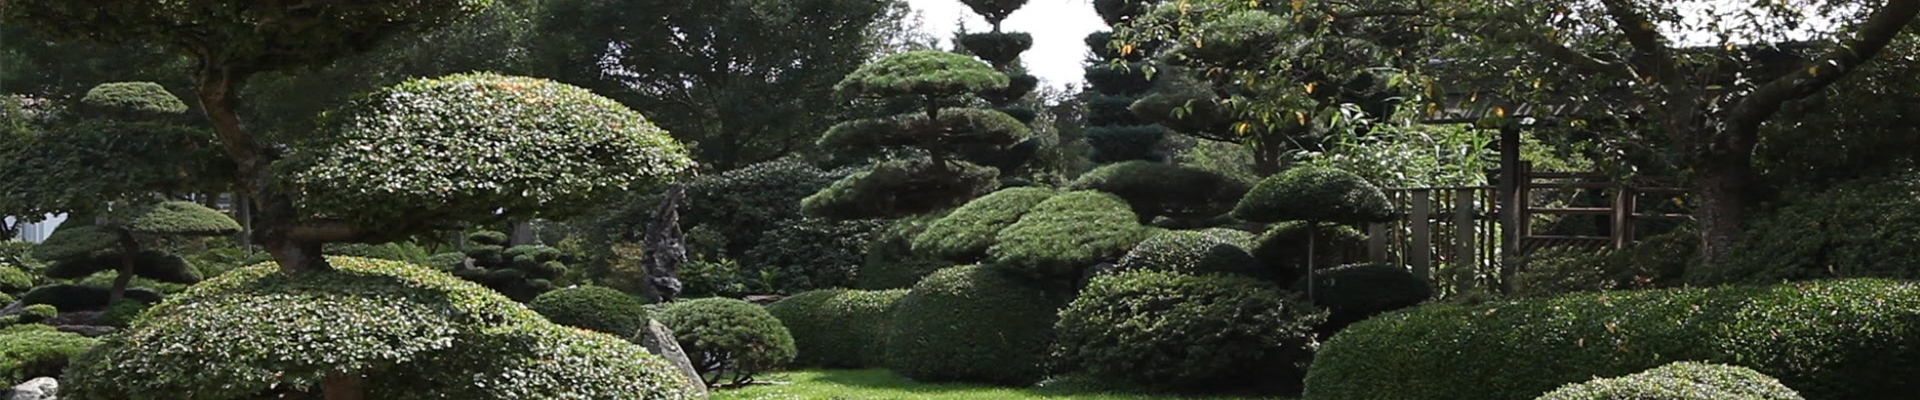 Gartengestaltung - Japan Garten (thumbnail)